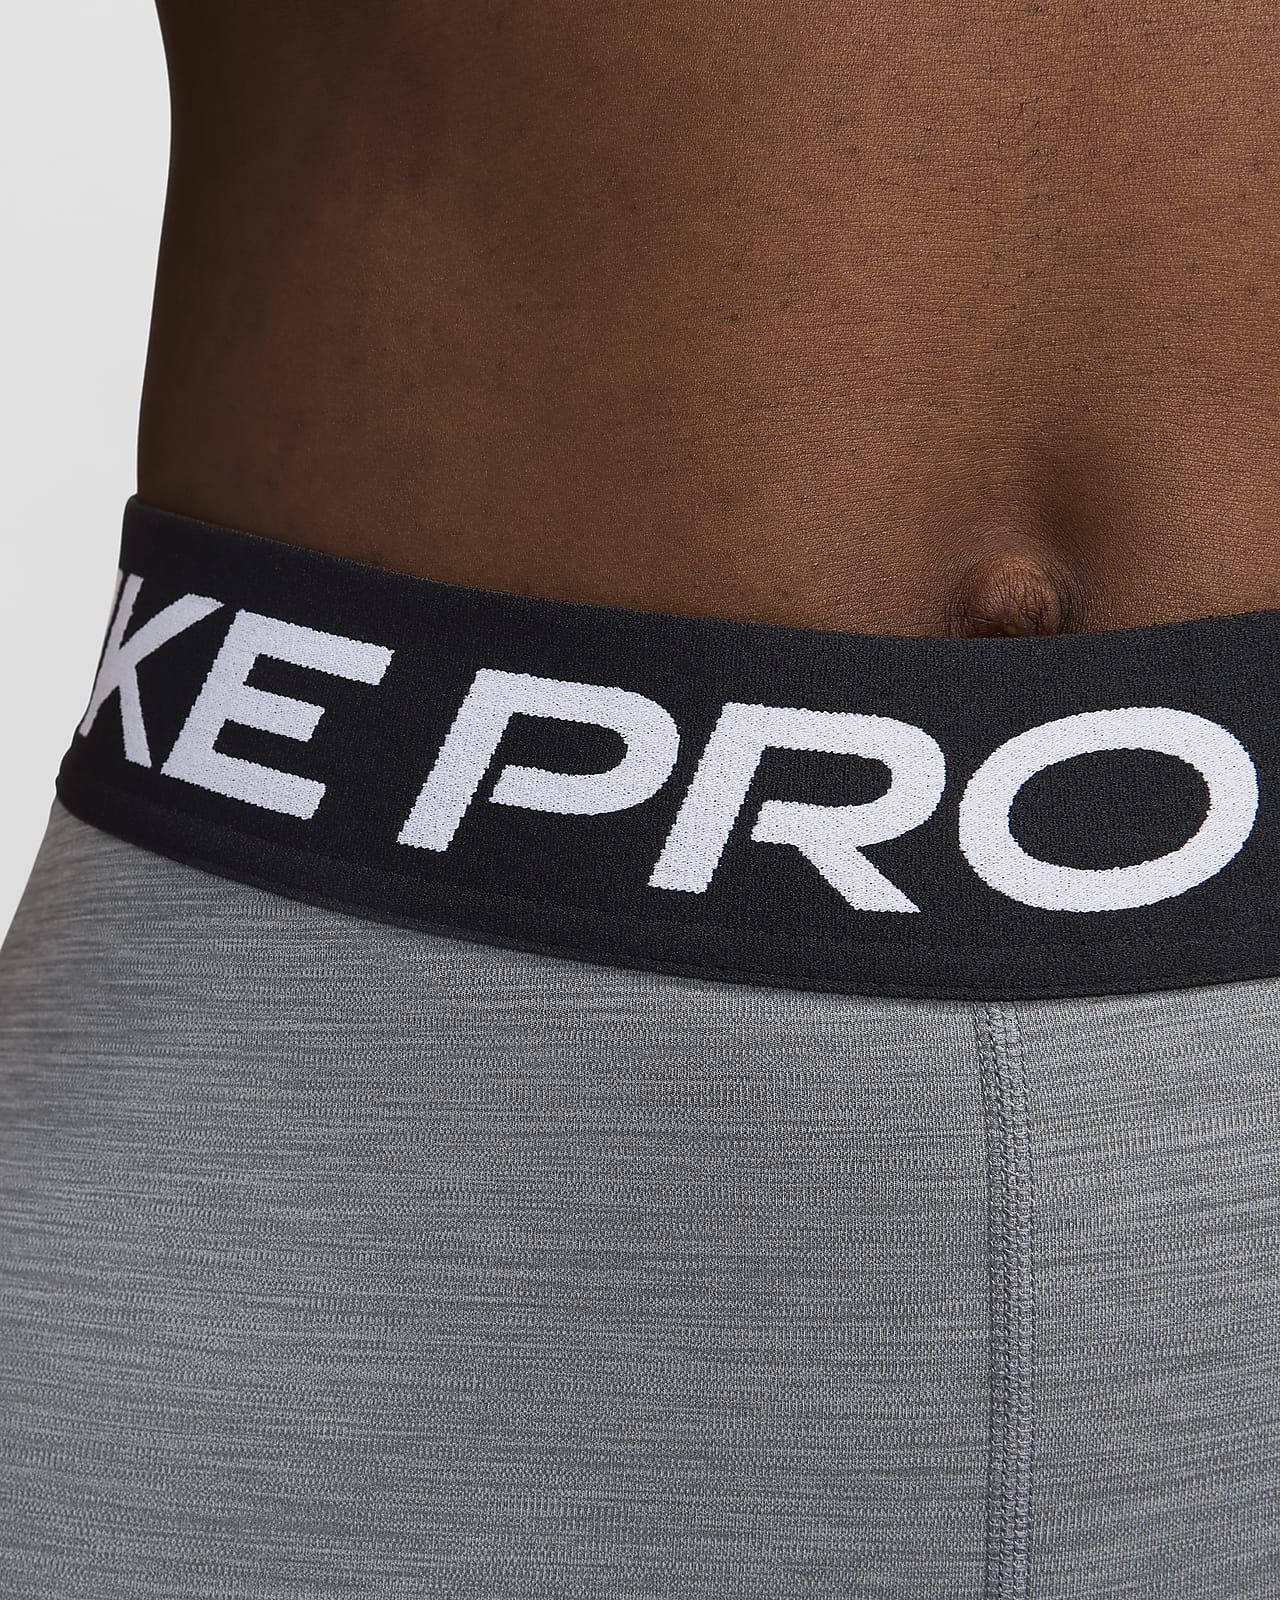 Leggings de cintura normal com painéis de malha Nike Pro para mulher